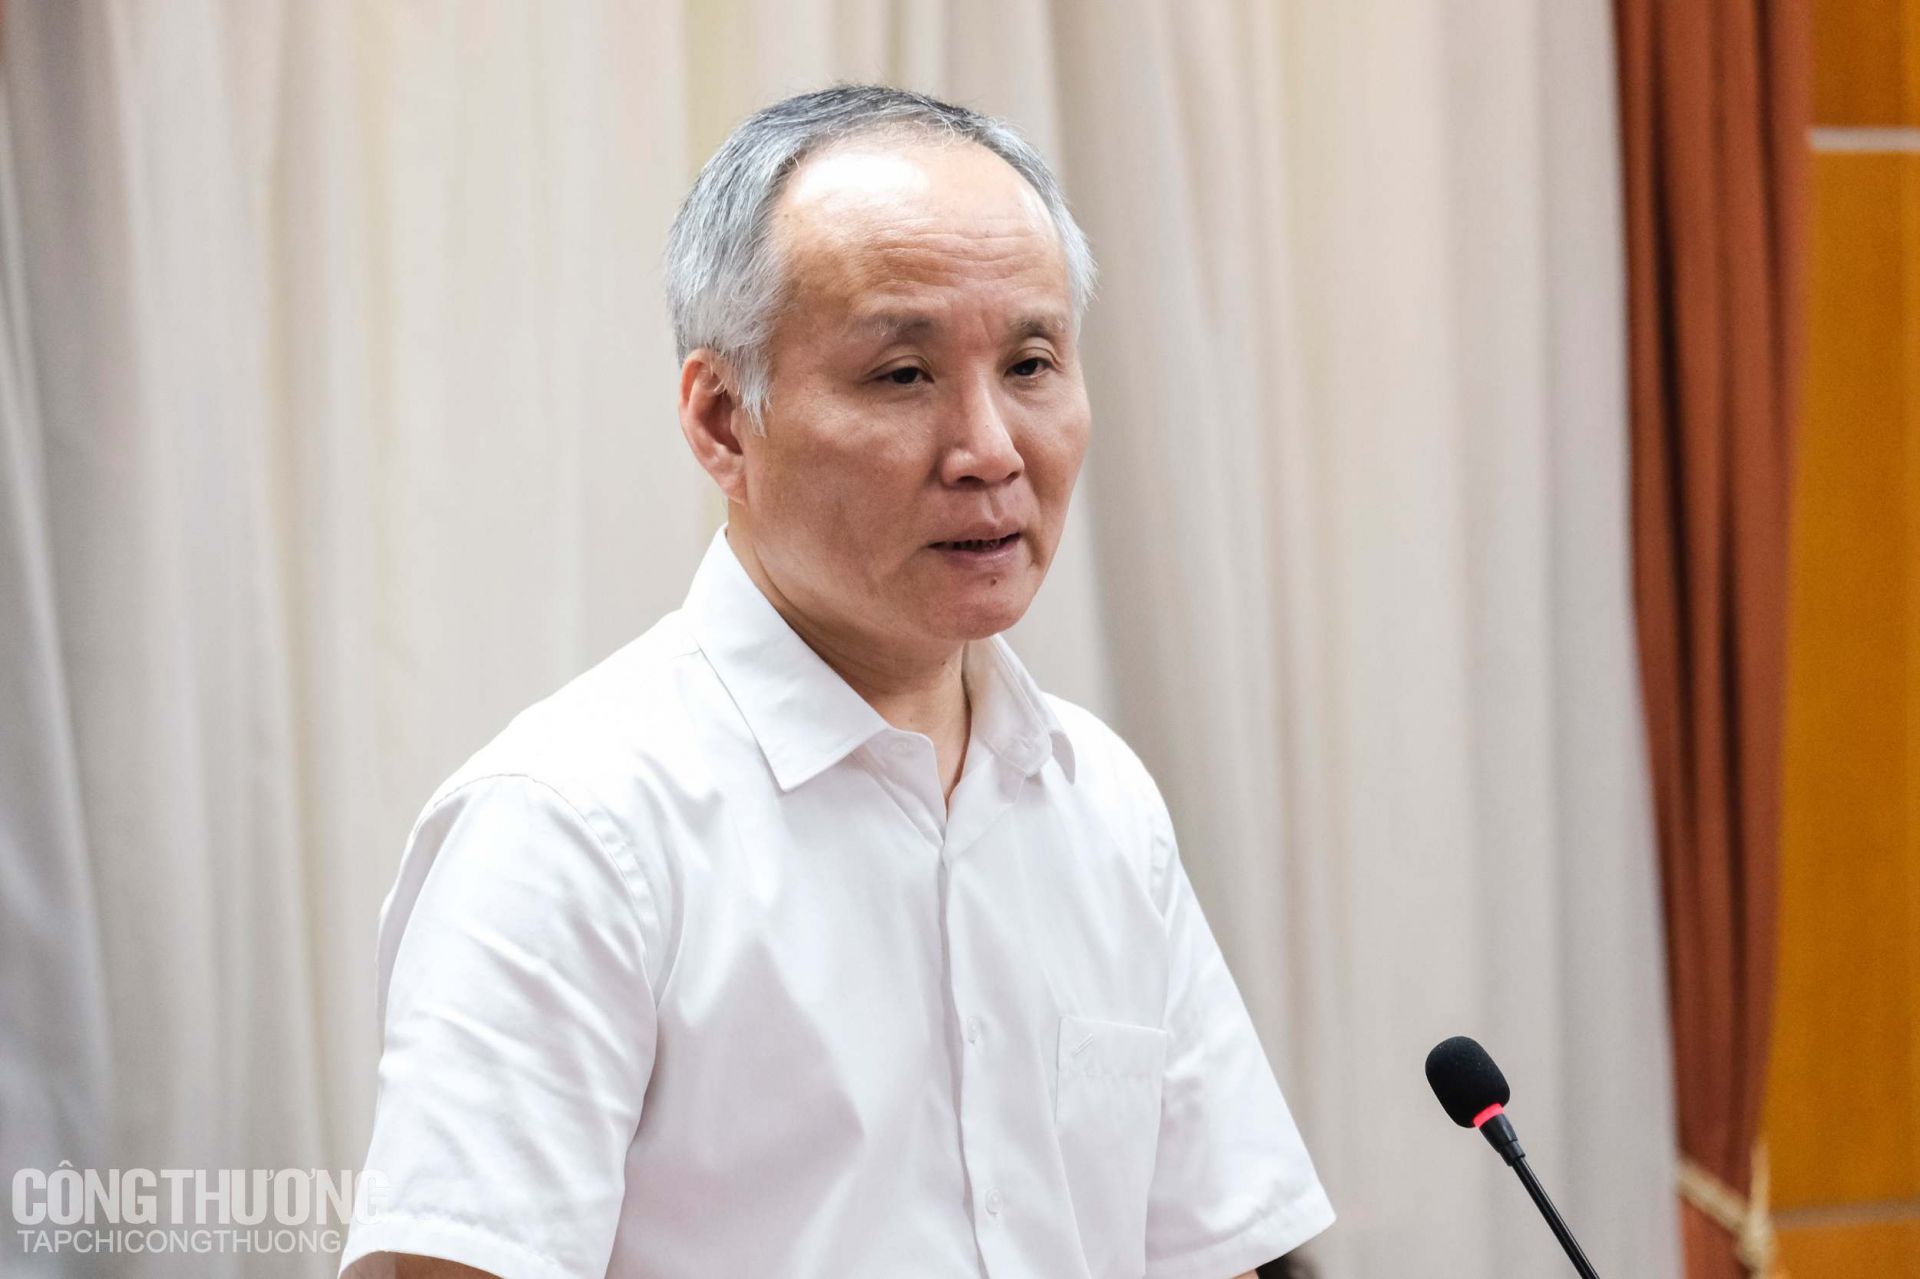 Thứ trưởng Trần Quốc Khánh khẳng định cần "ưu tiên hỗ trợ đúng nơi cần trước"